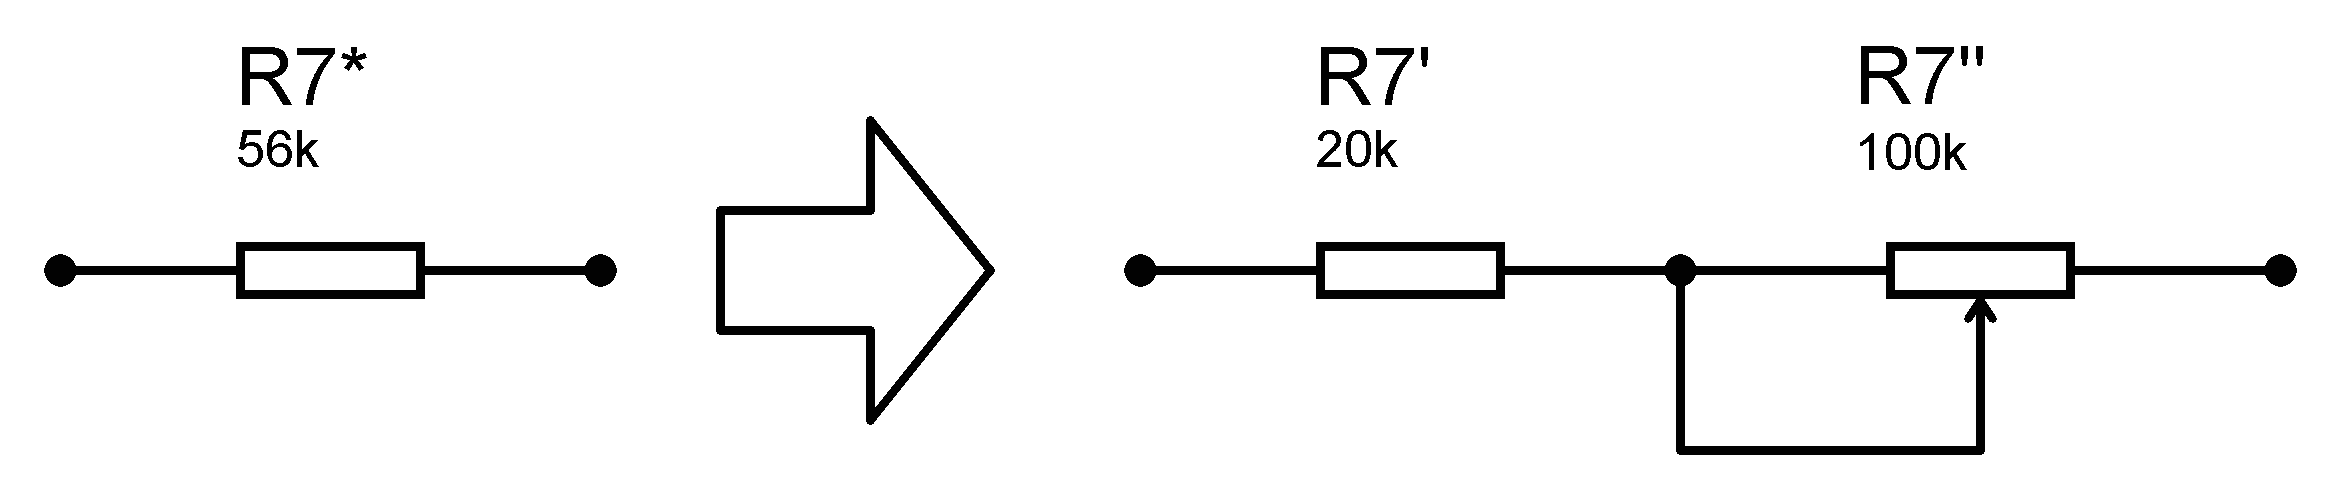 Схема замены резистора R7*